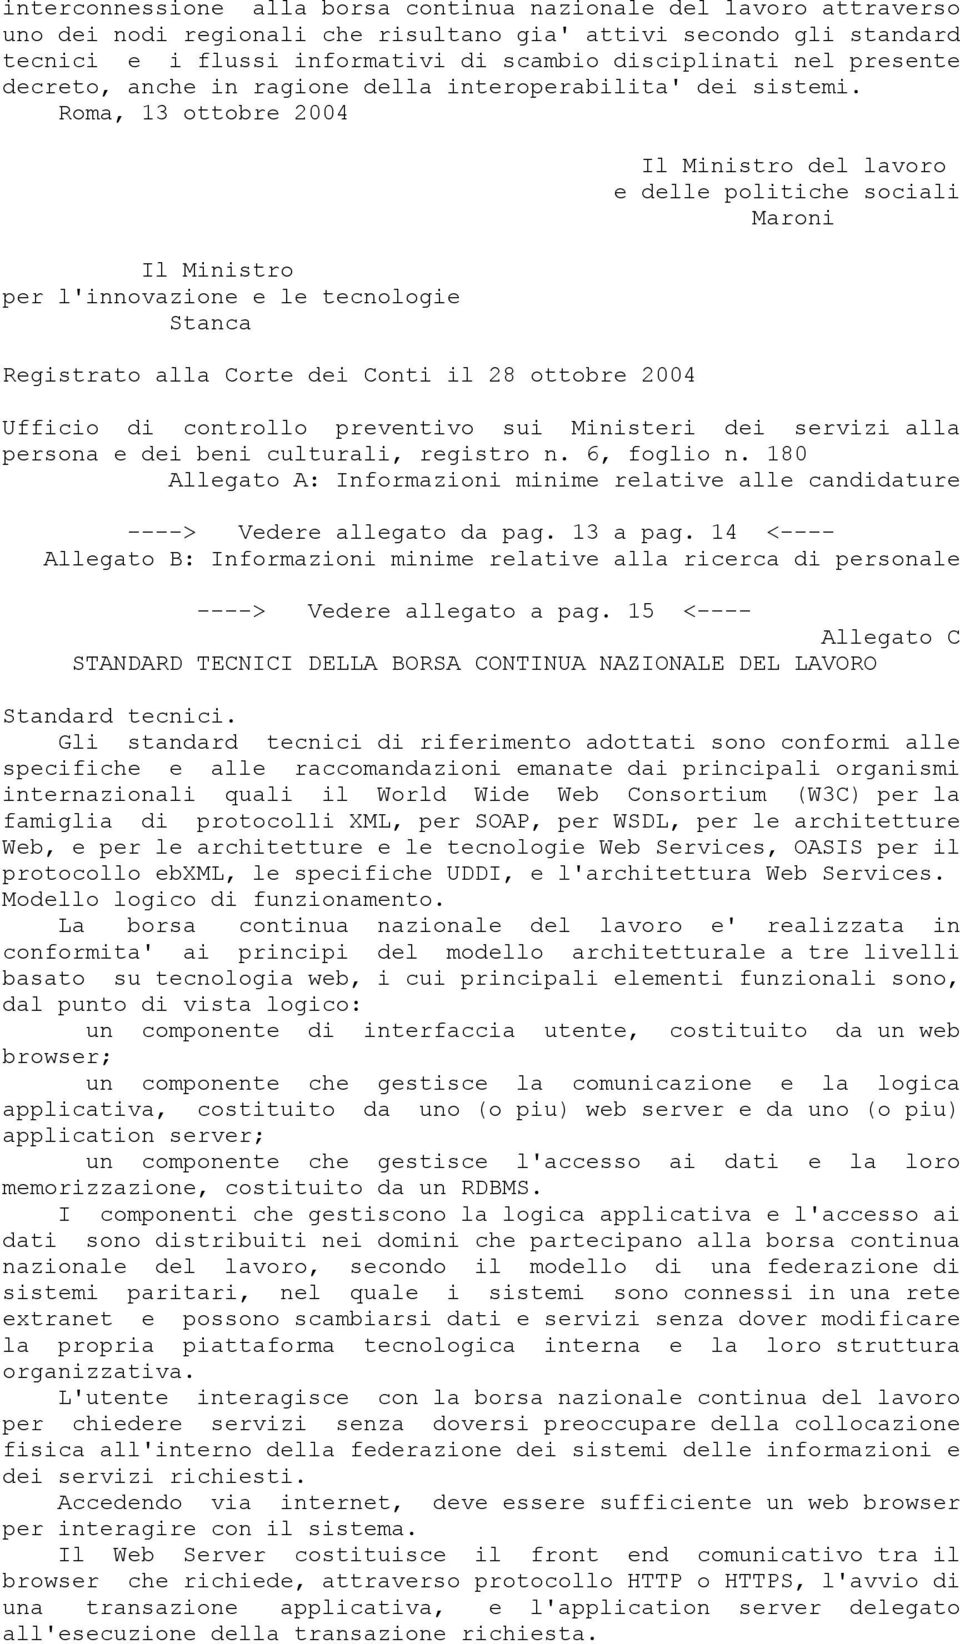 Roma, 13 ottobre 2004 Il Ministro per l'innovazione e le tecnologie Stanca Registrato alla Corte dei Conti il 28 ottobre 2004 Il Ministro del lavoro e delle politiche sociali Maroni Ufficio di